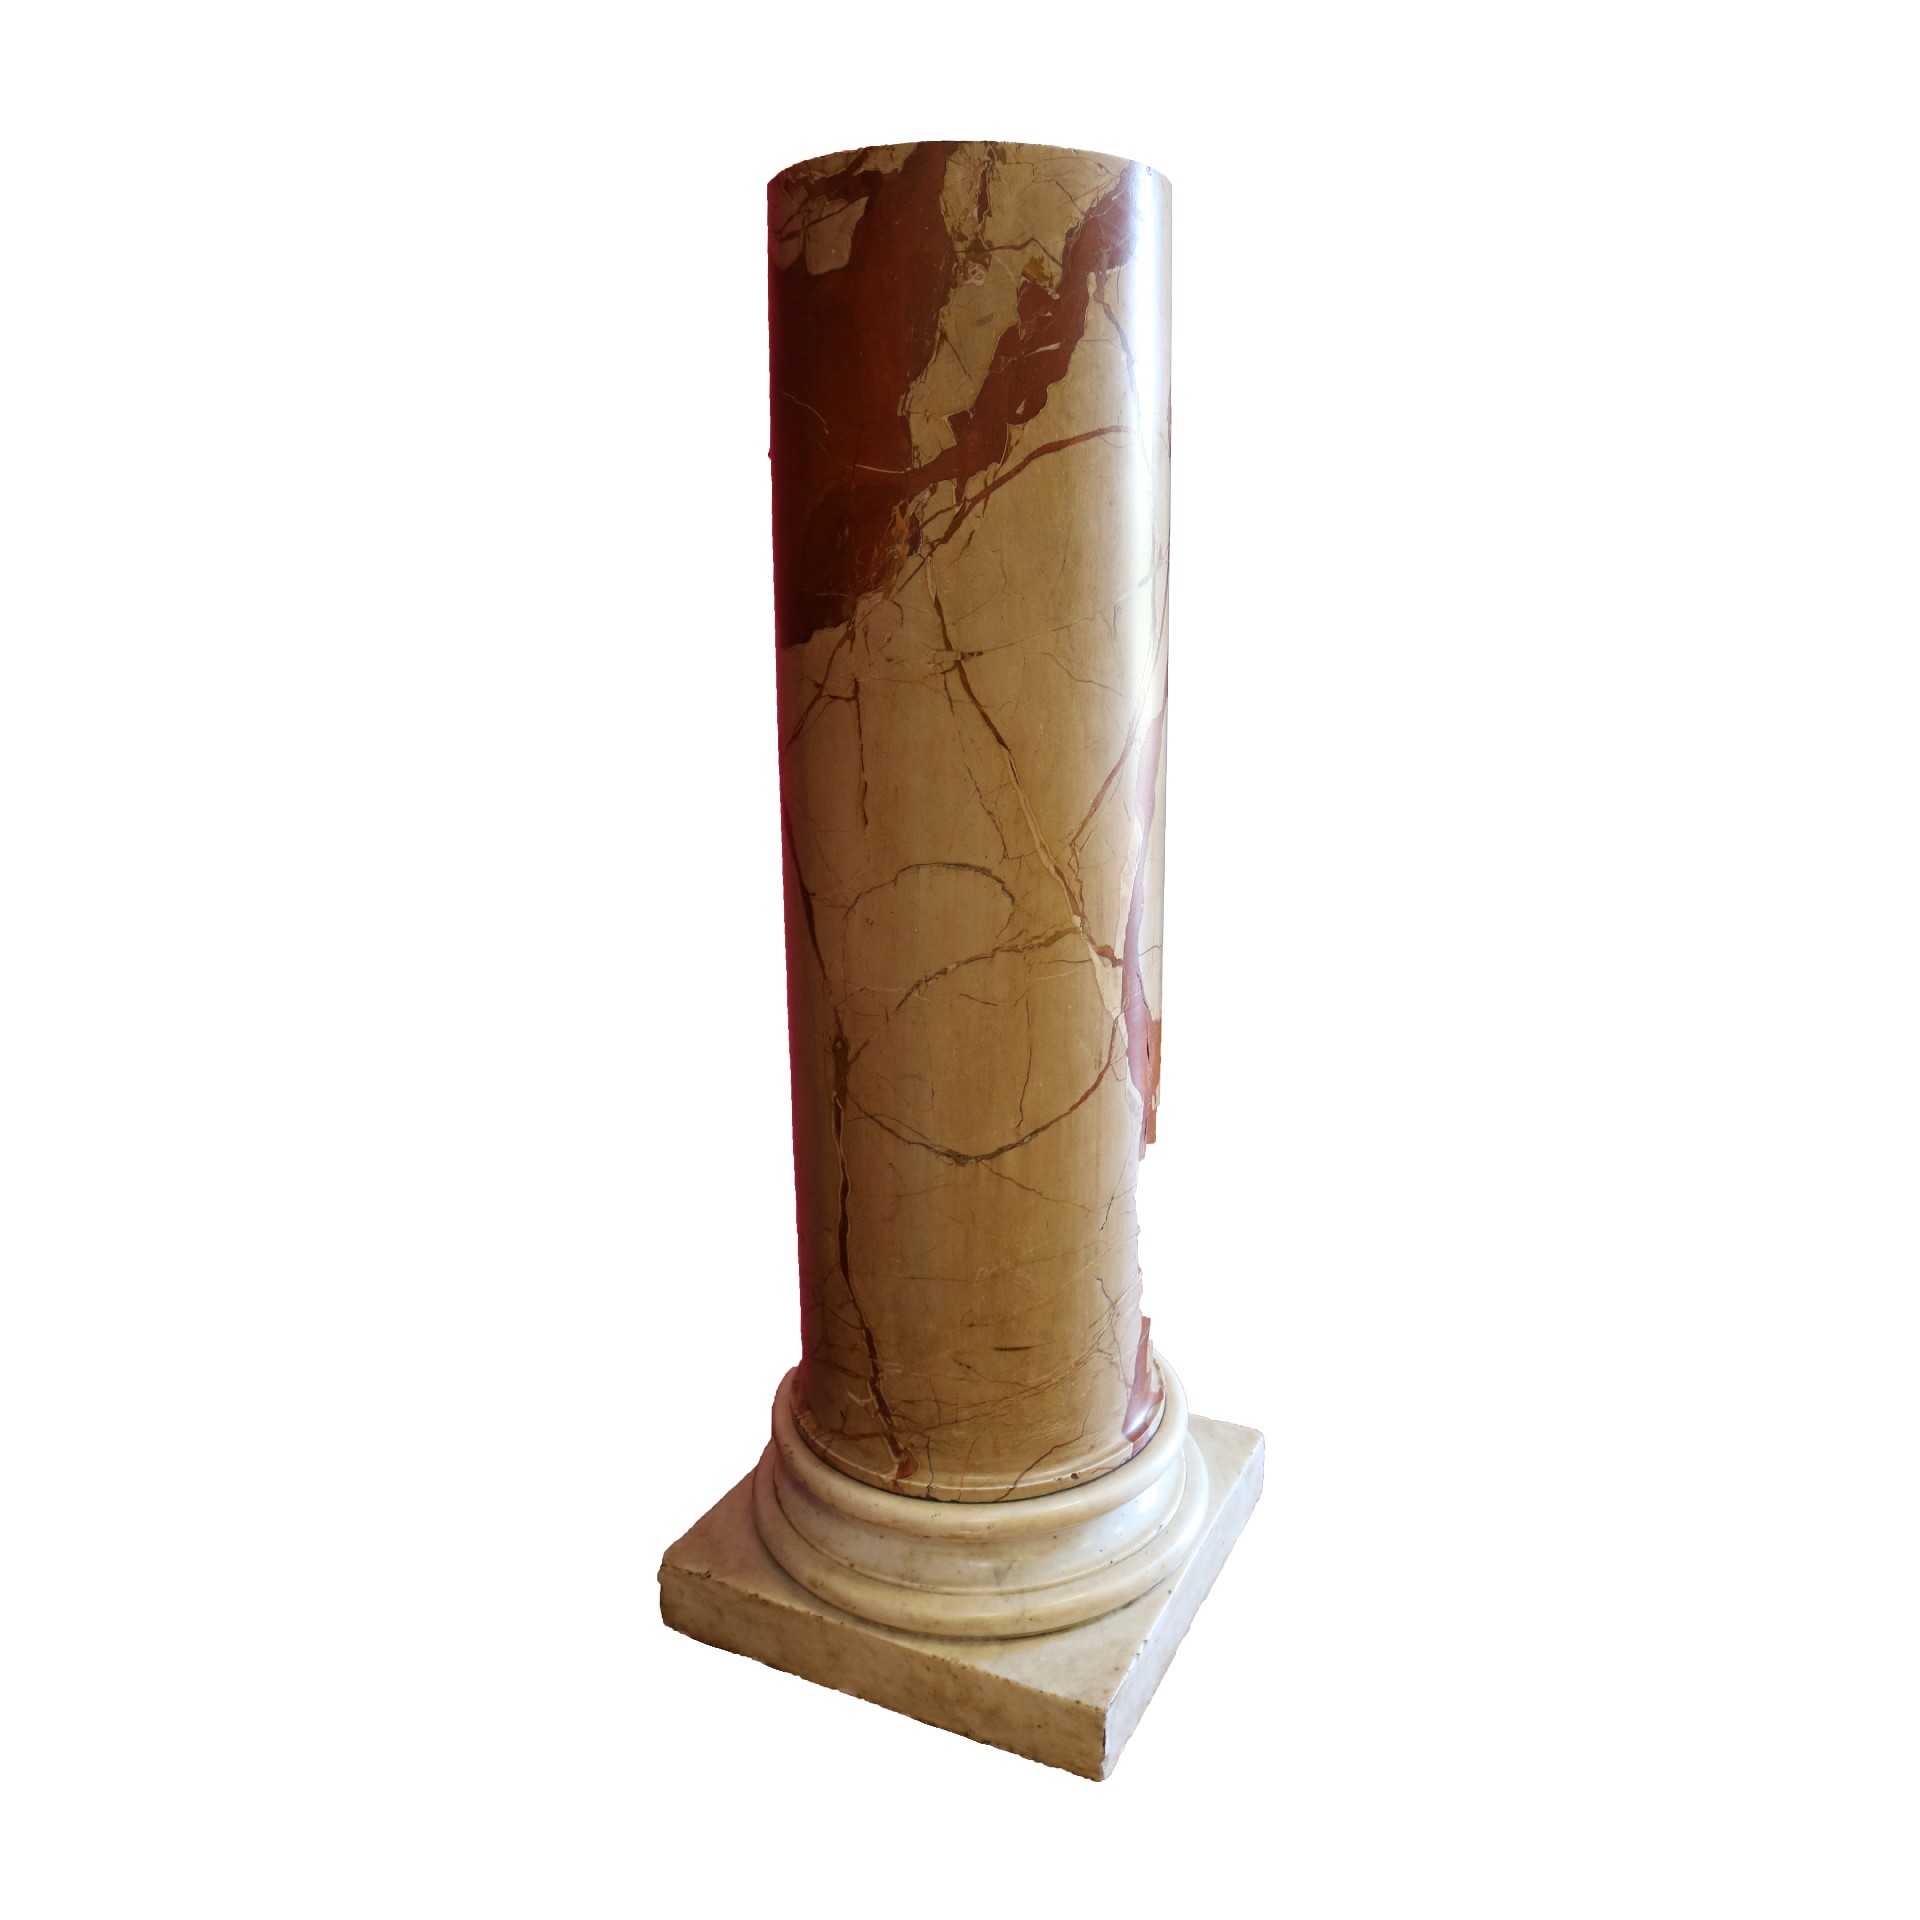 Antica colonna in marmo. Epoca 1800. - 1